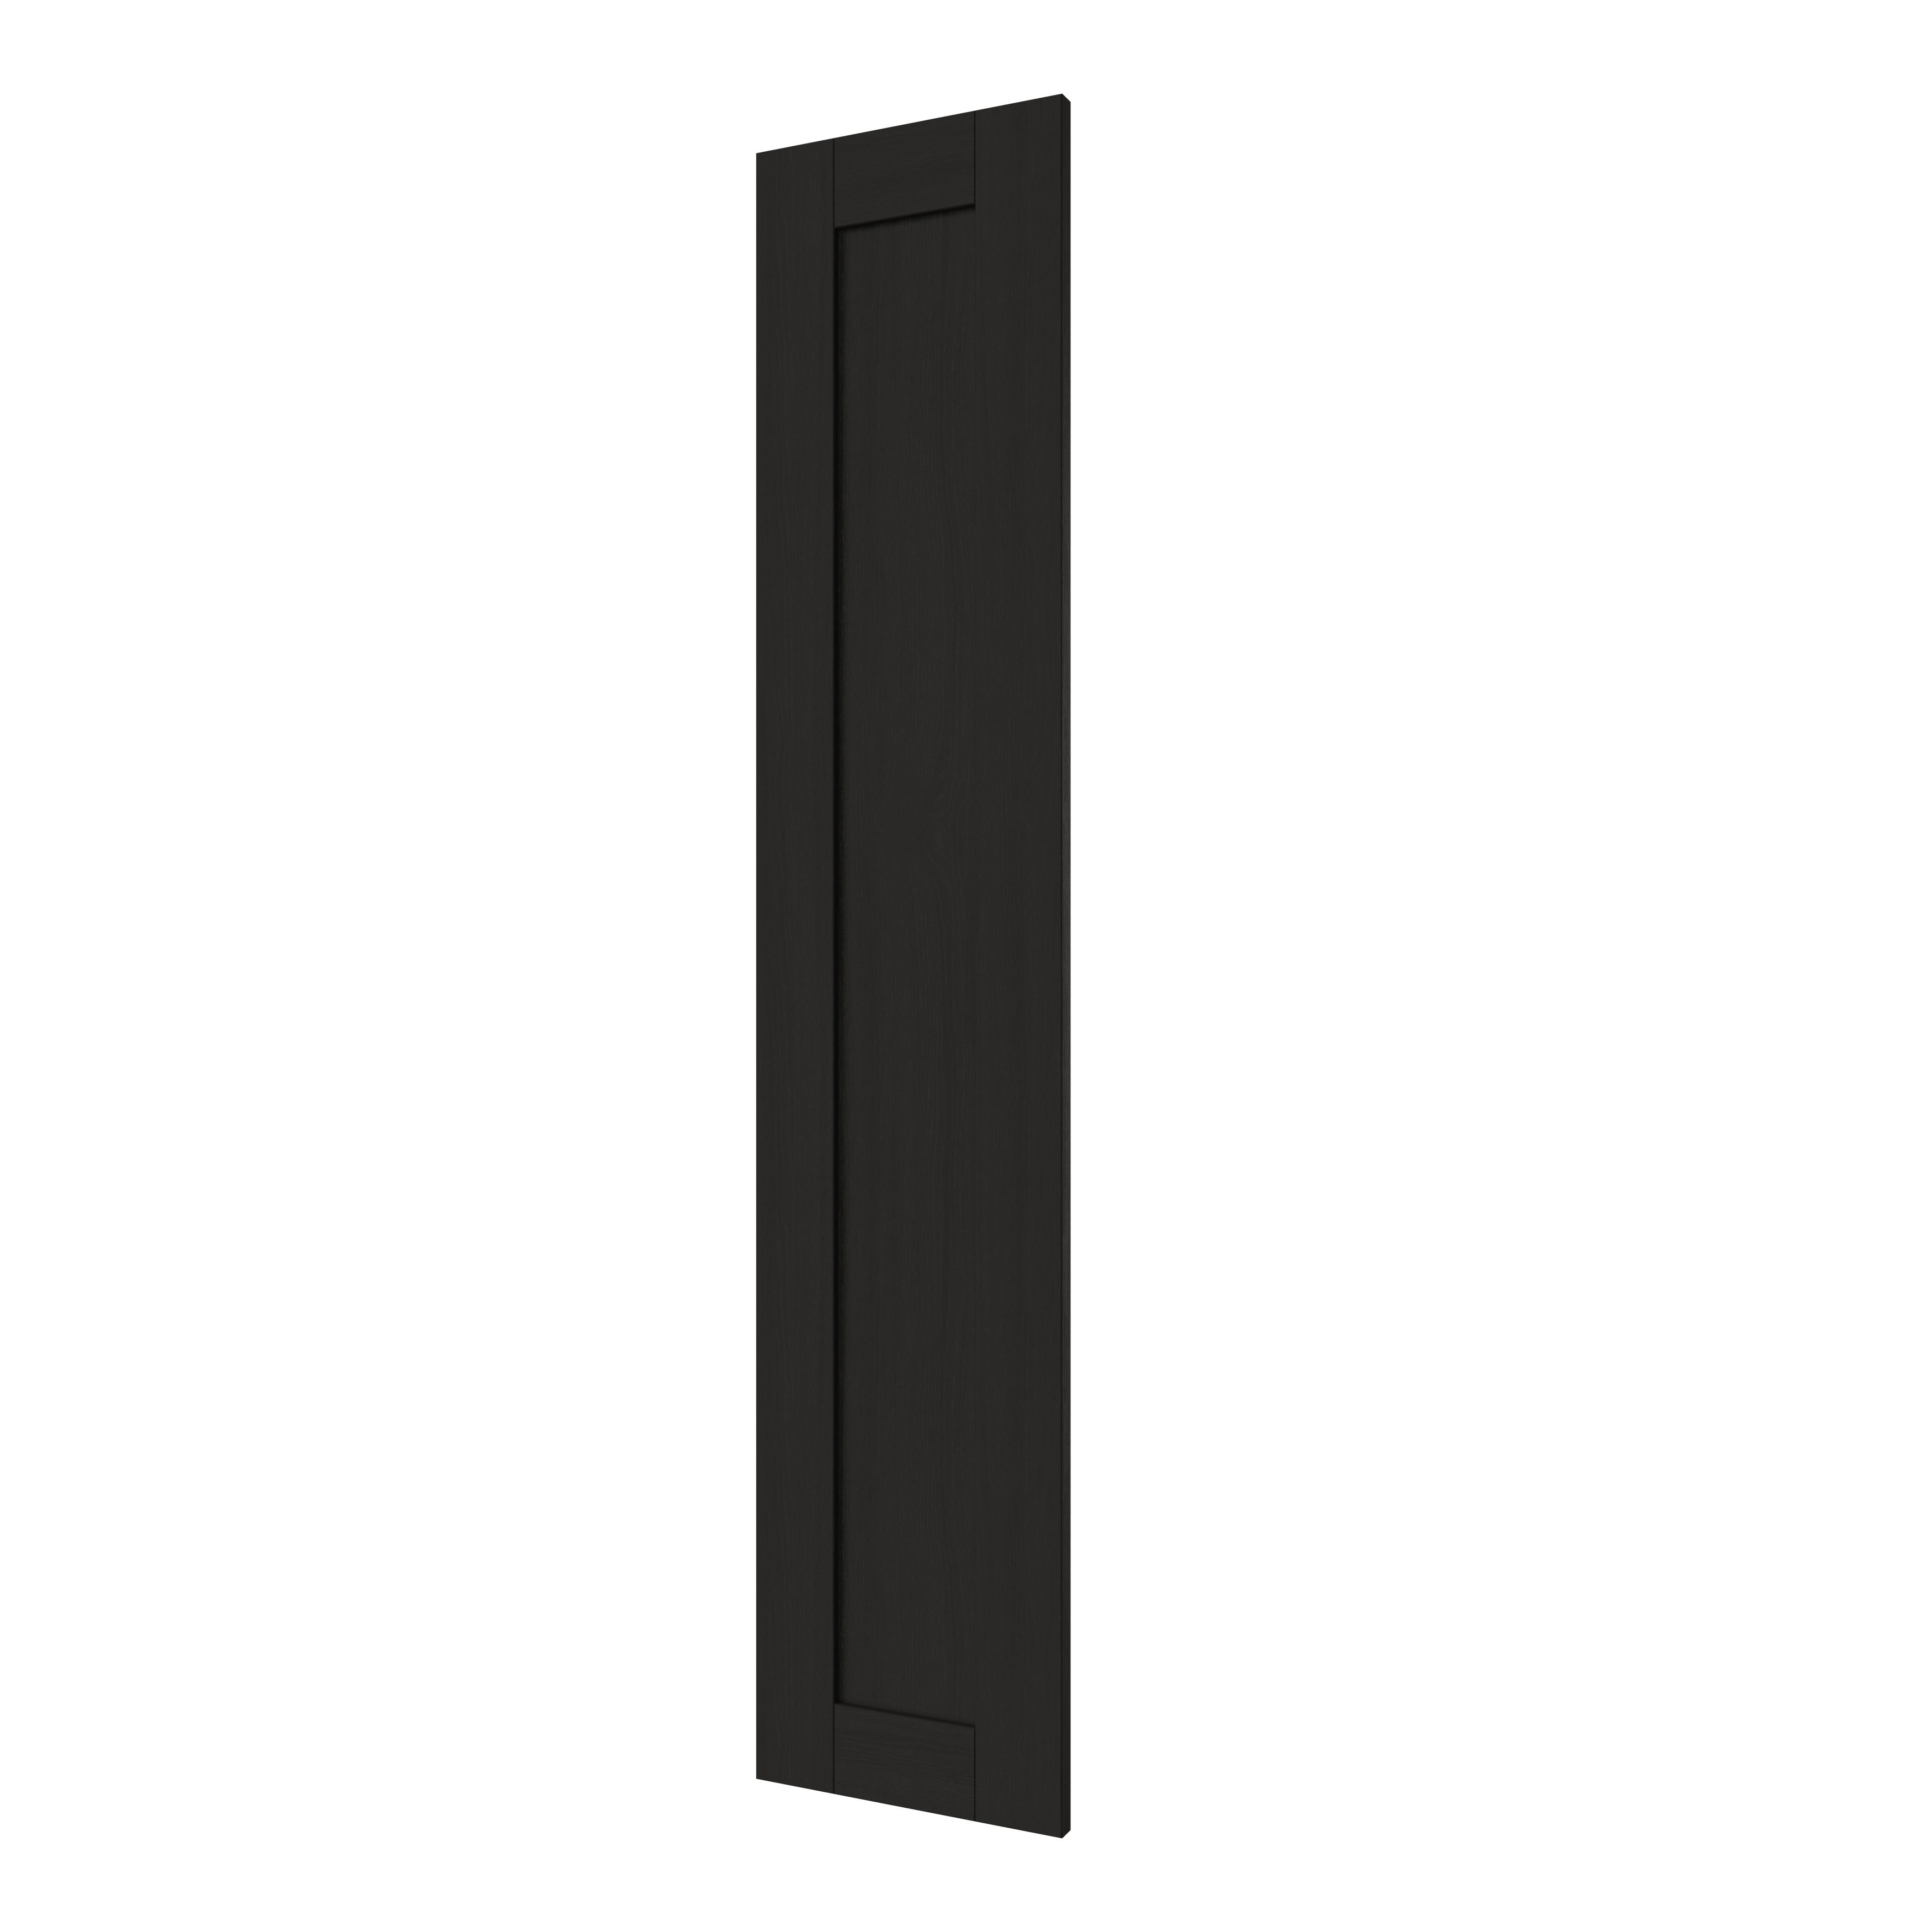 GoodHome Verbena Matt charcoal shaker 70:30 Tall larder Cabinet door (W)300mm (H)1467mm (T)20mm